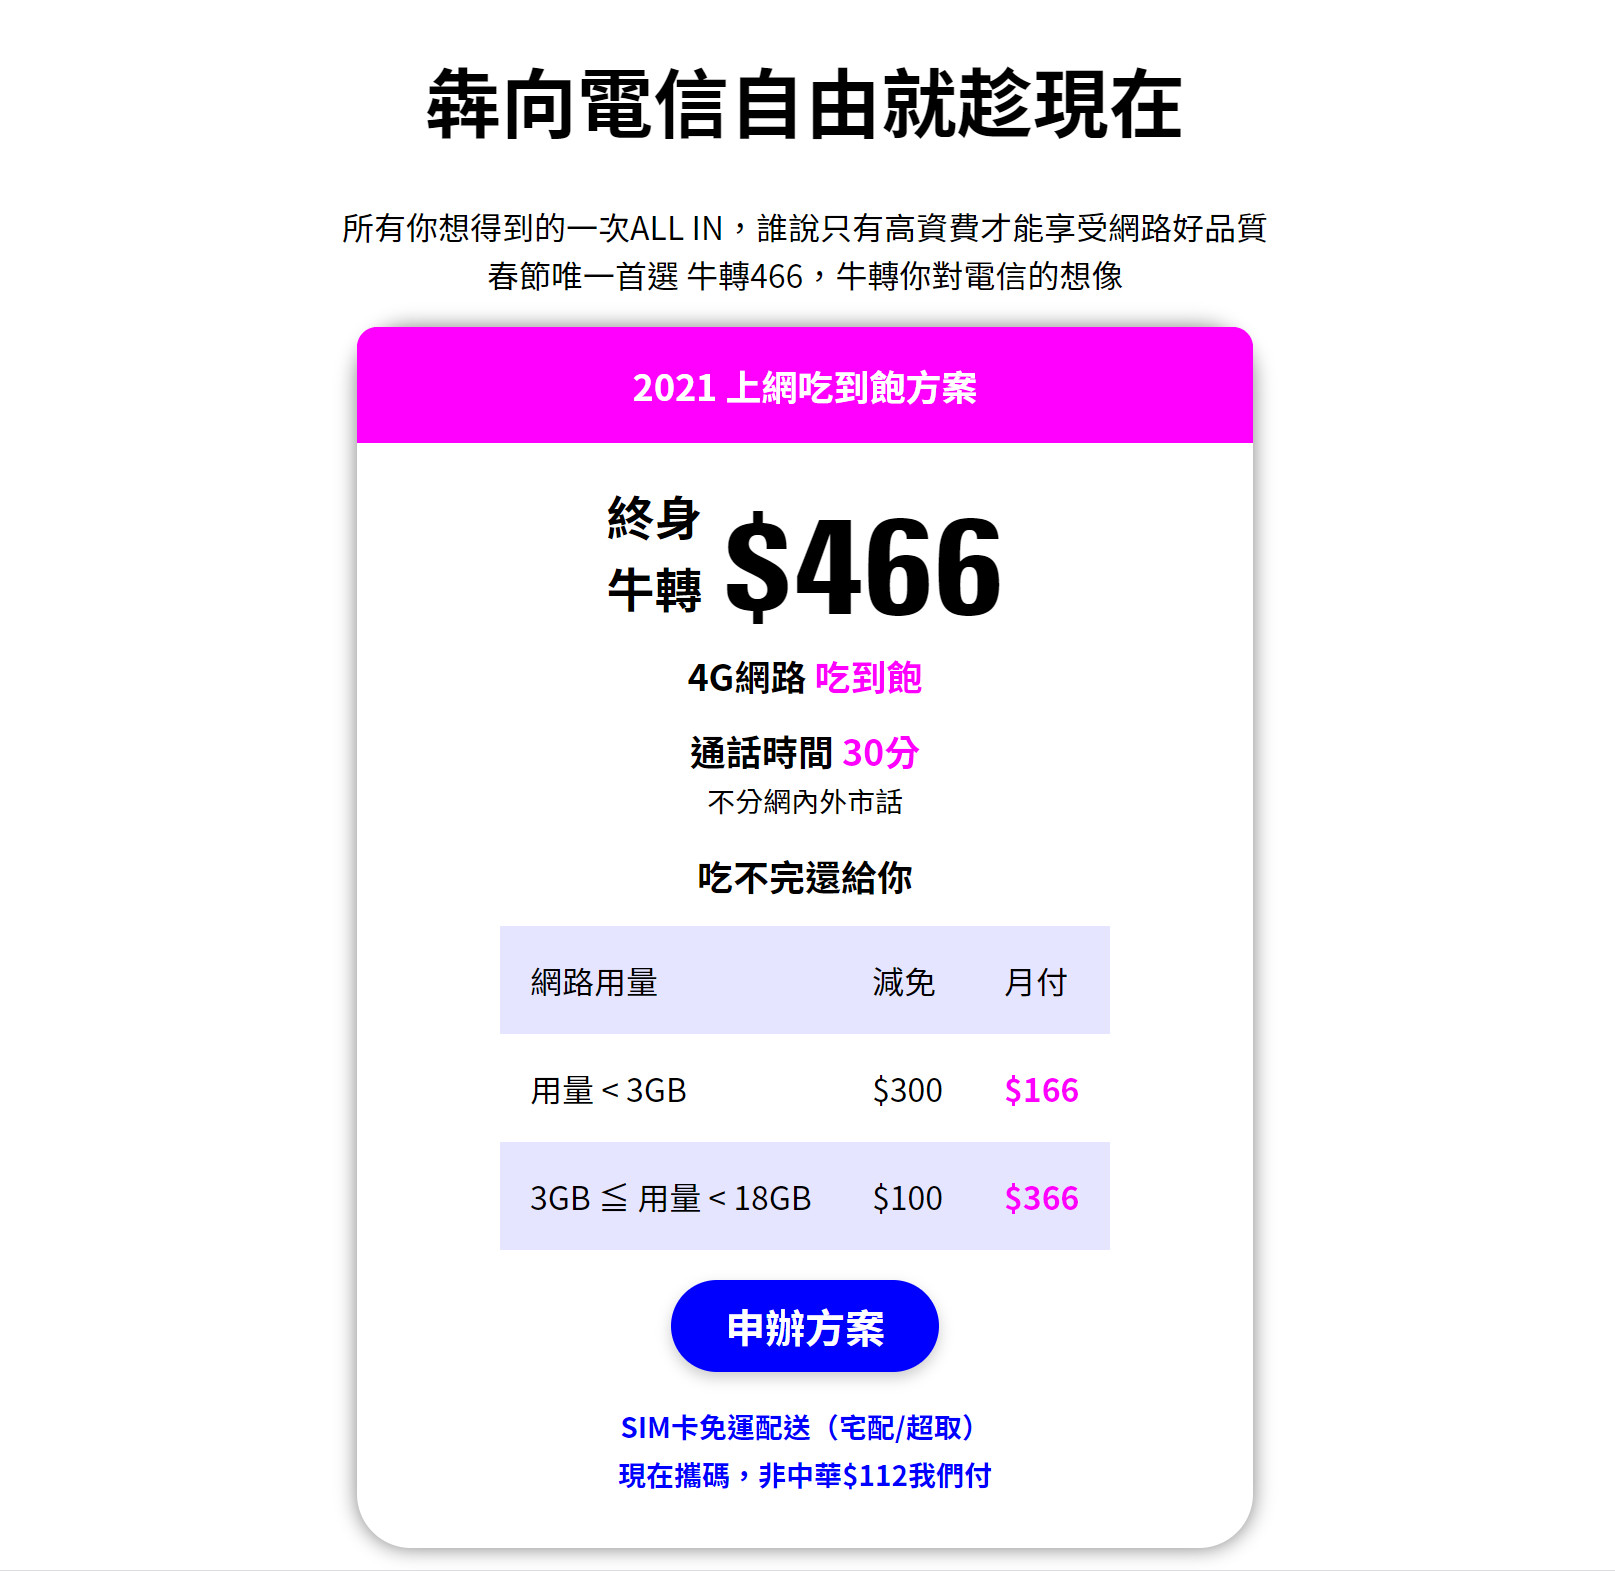 【無框行動】新春專案，中華電信大4G網路吃到飽466元，低流量只要166元!超適合搭配台灣之星雙11專案。 - 無框行動客服 - 敗家達人推薦